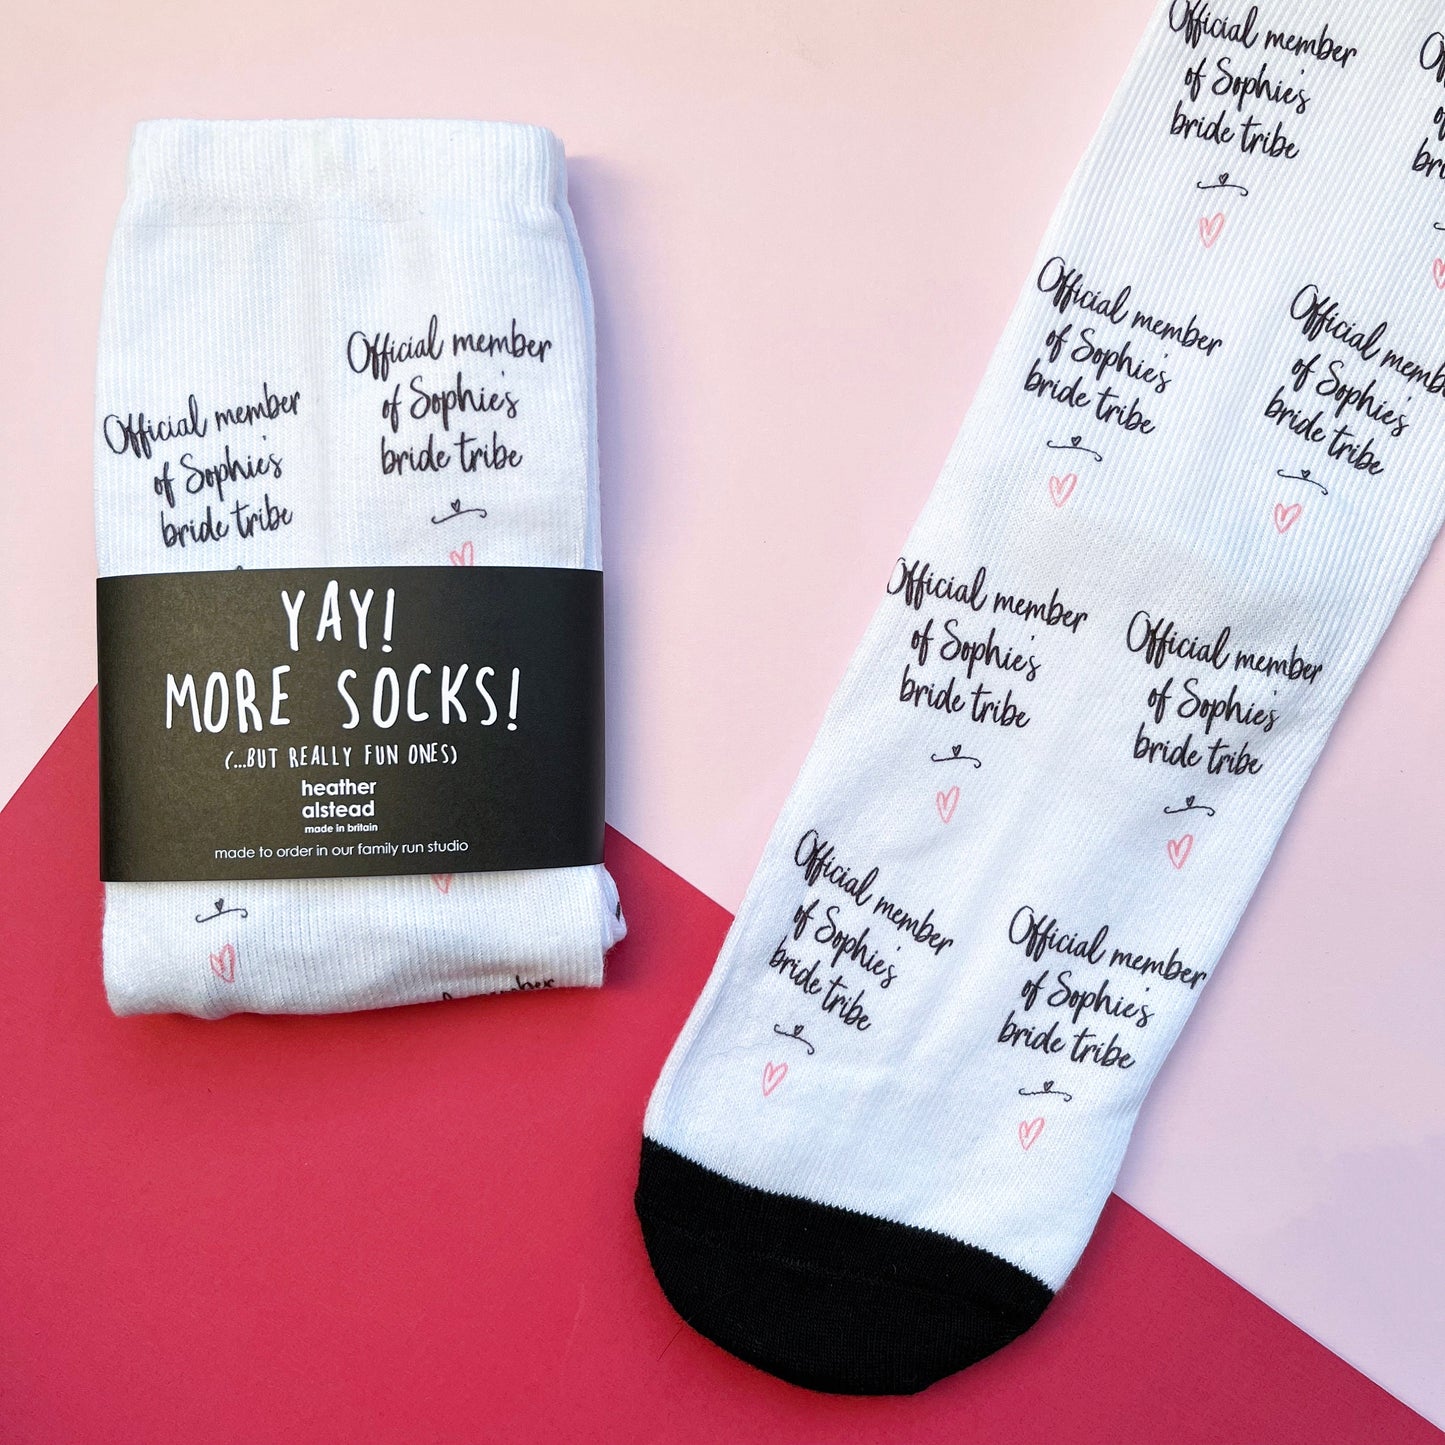 Personalised Bride Tribe Socks